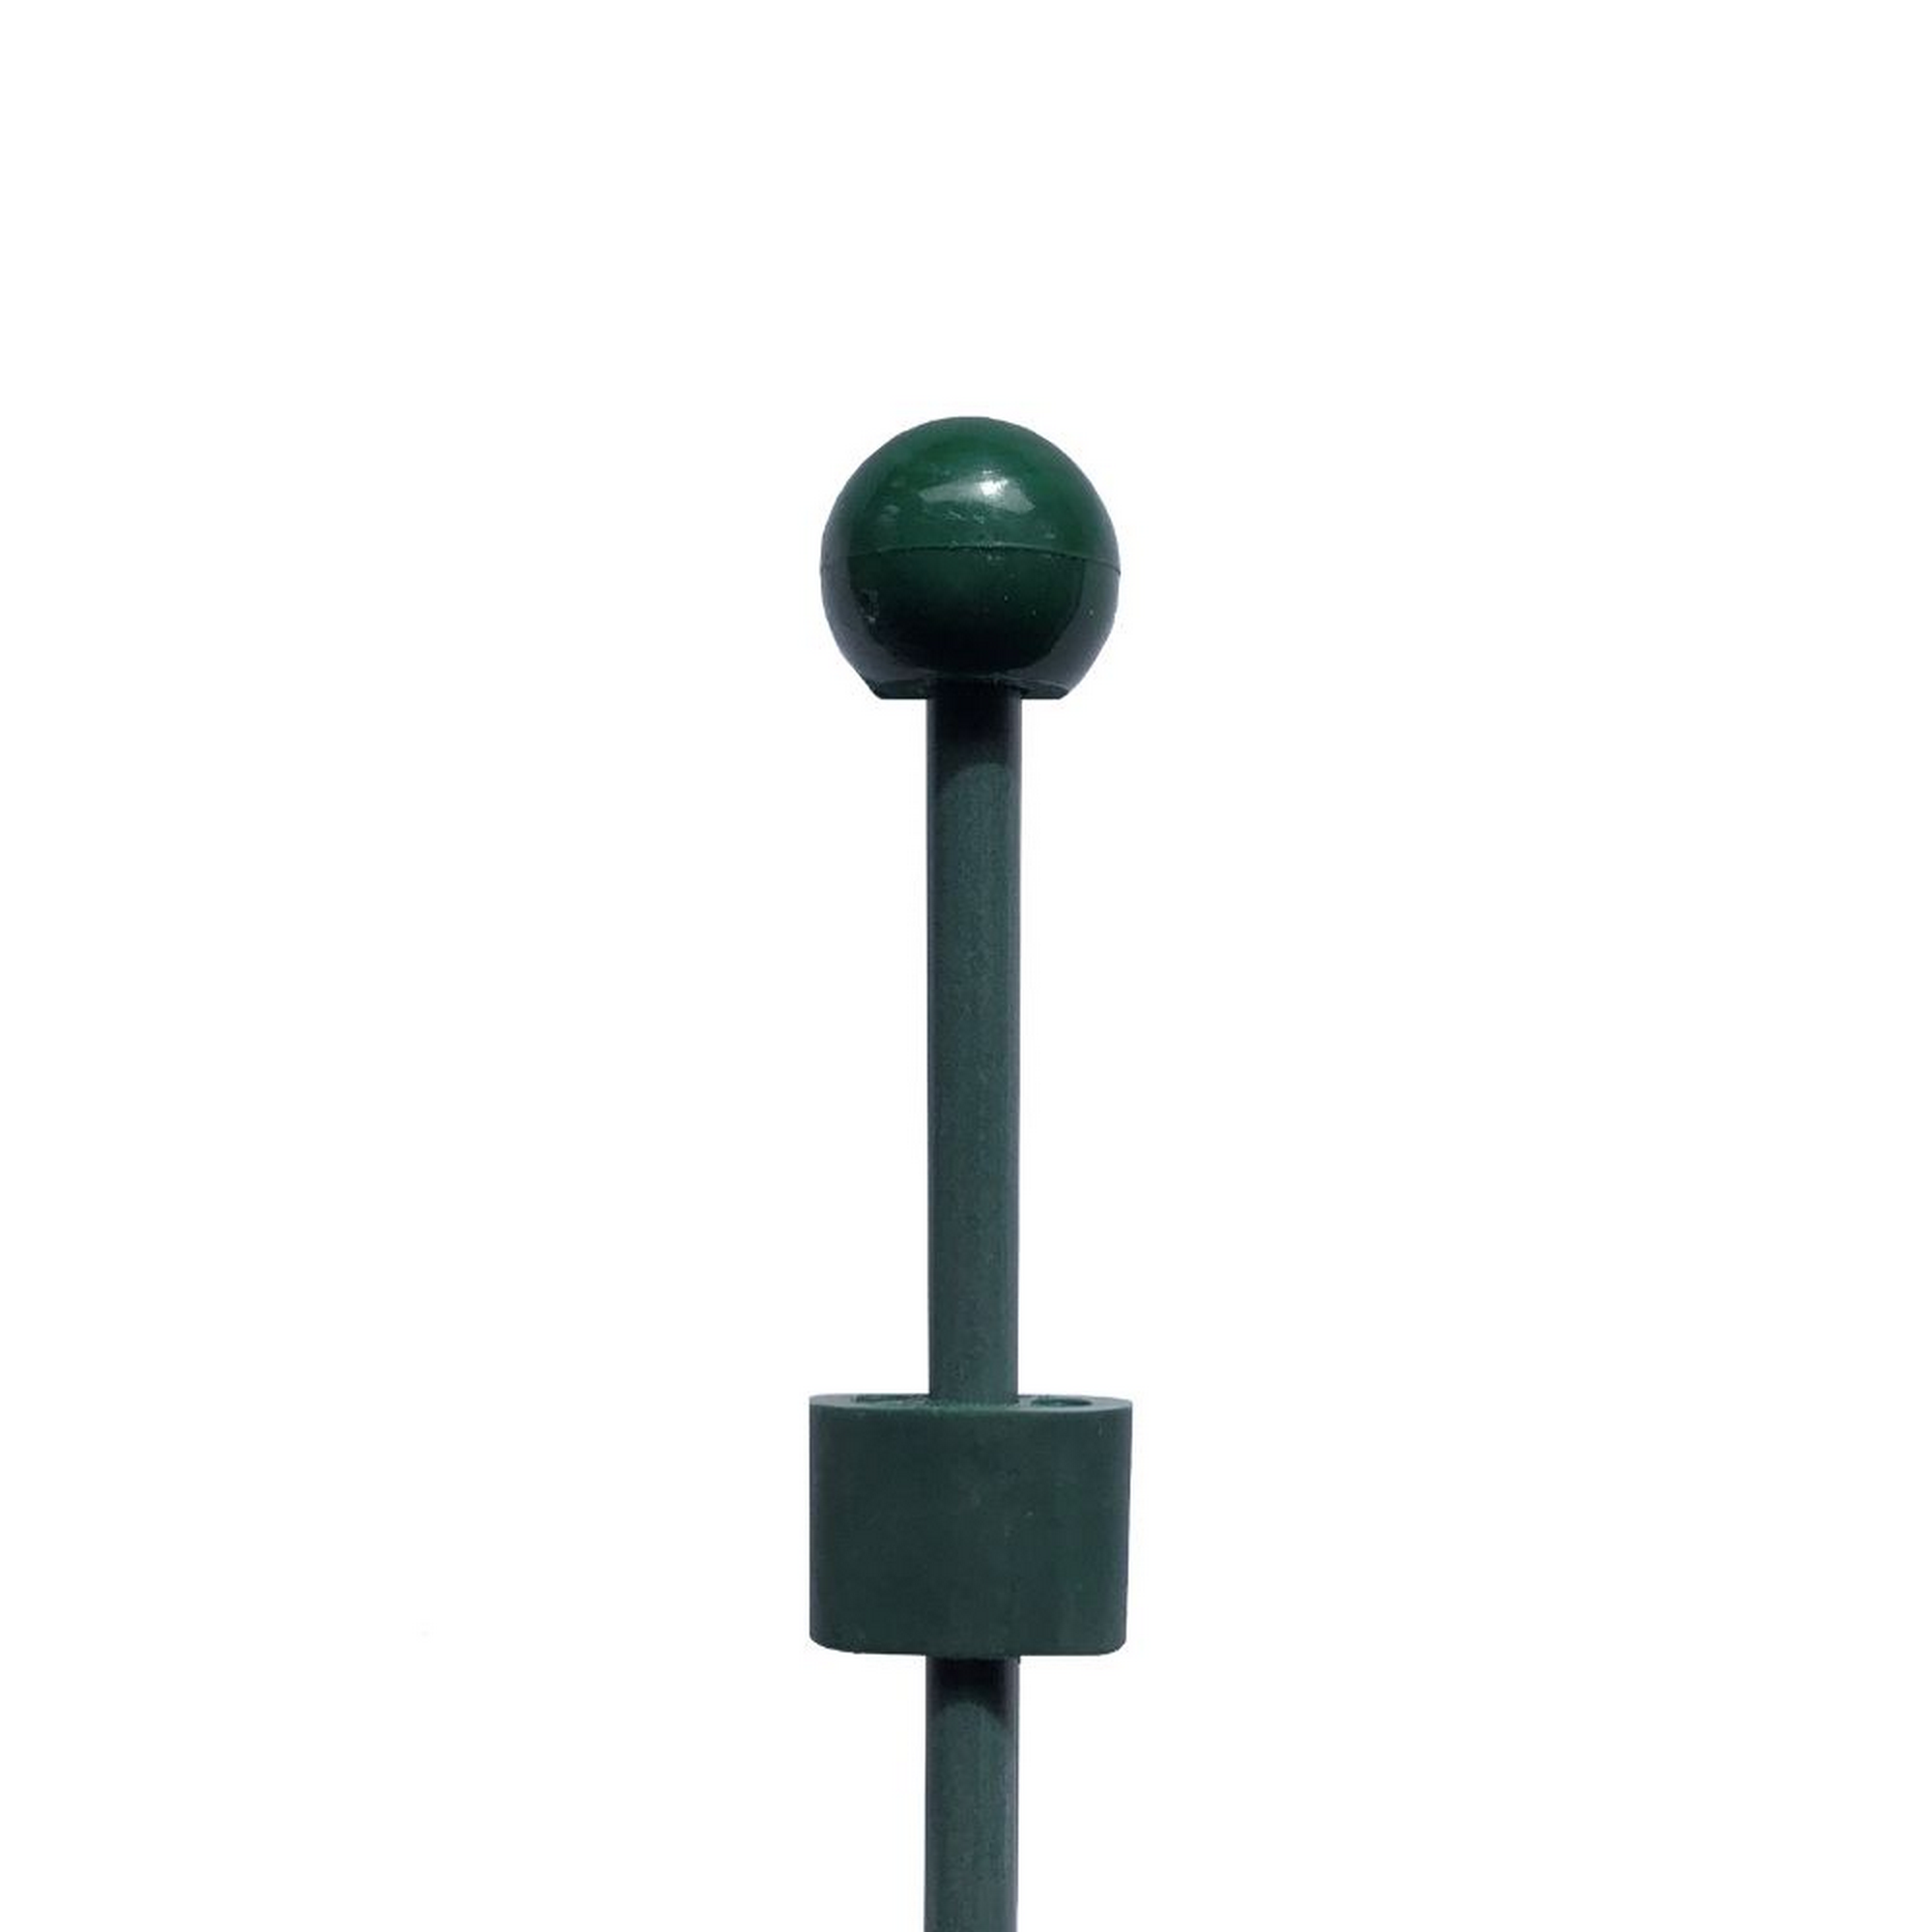 Pinnup-Bodenstab mit Kupplung Glasfiber grün Ø 0,8 x 100 cm + product picture